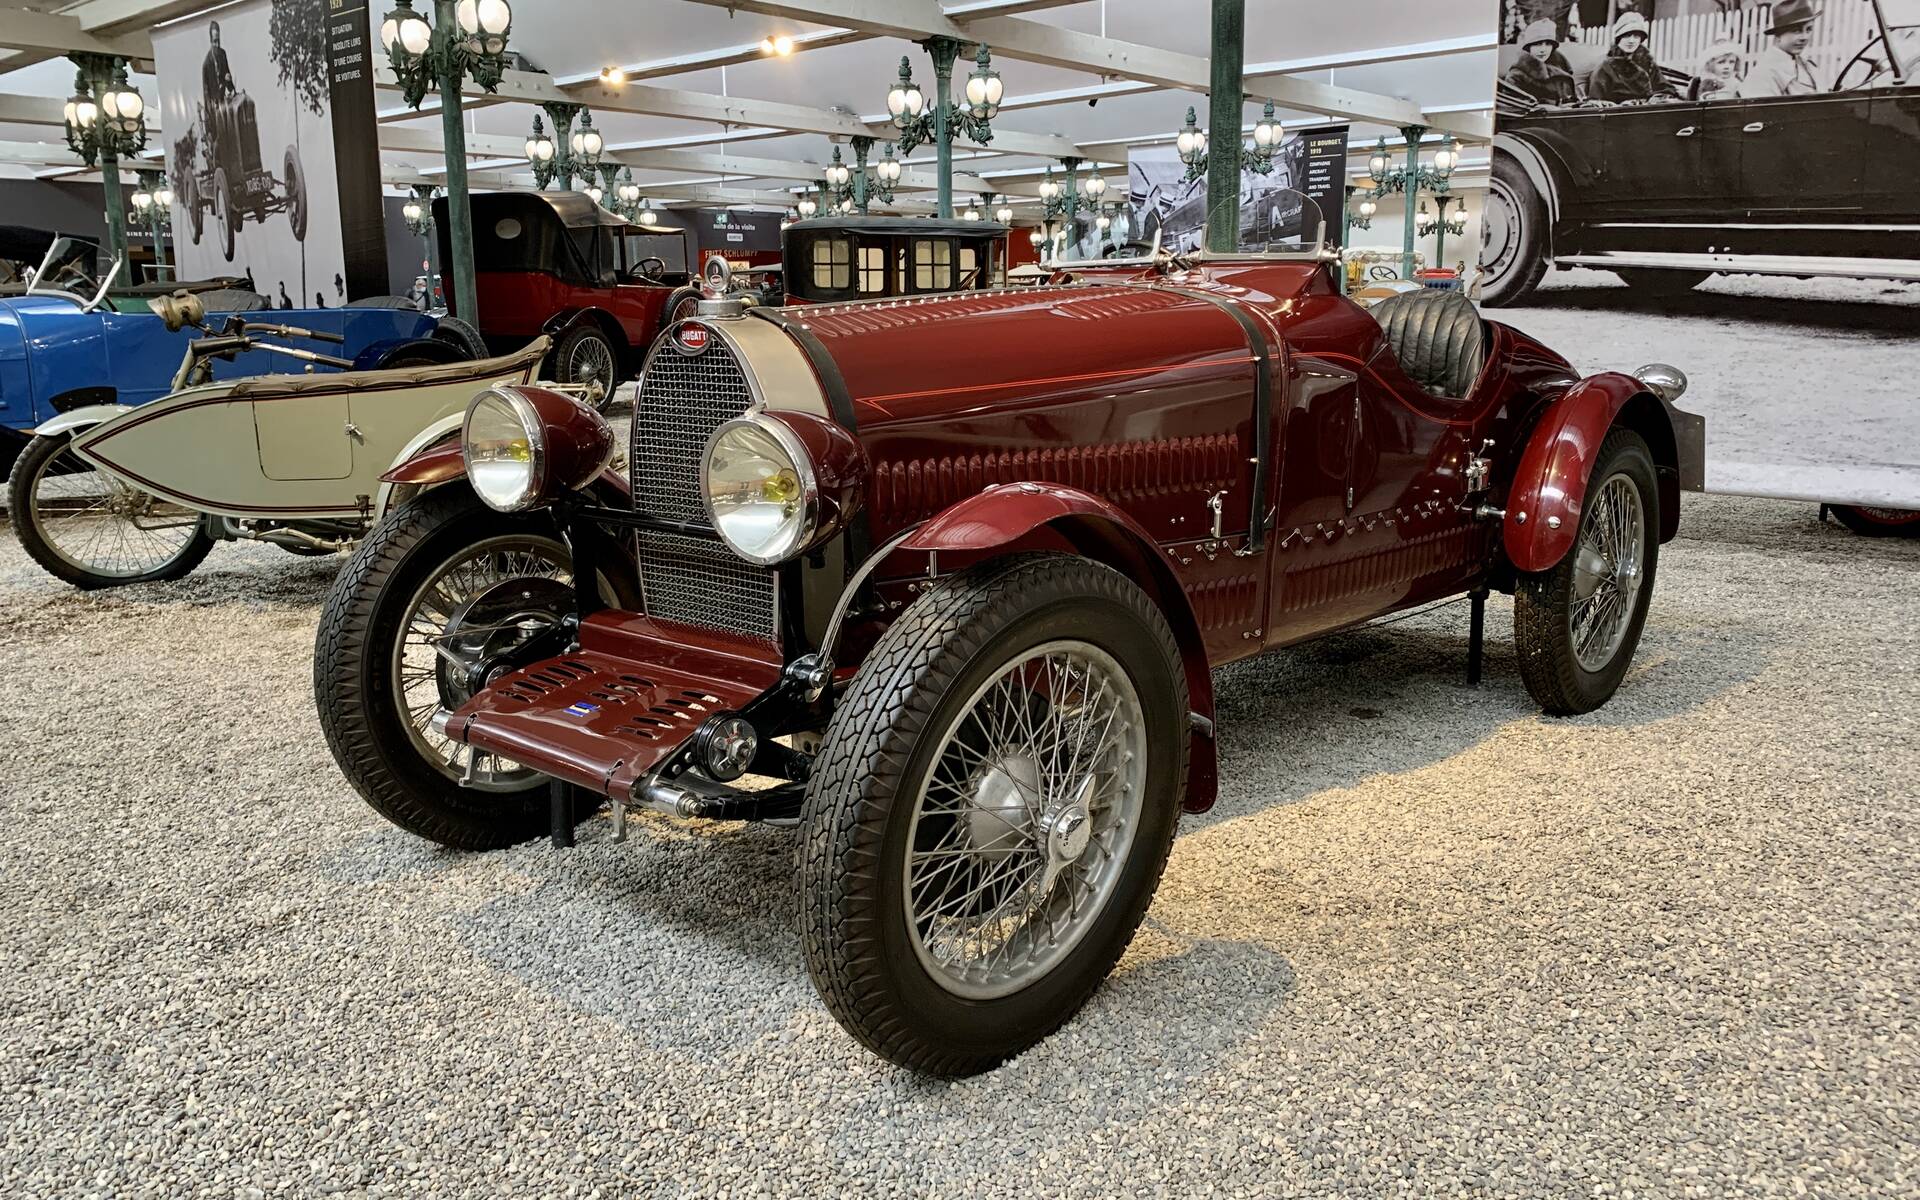 En photos : une centaine de Bugatti réunies dans un même musée 503053-en-photos-des-dizaines-de-bugatti-reunies-dans-un-meme-musee